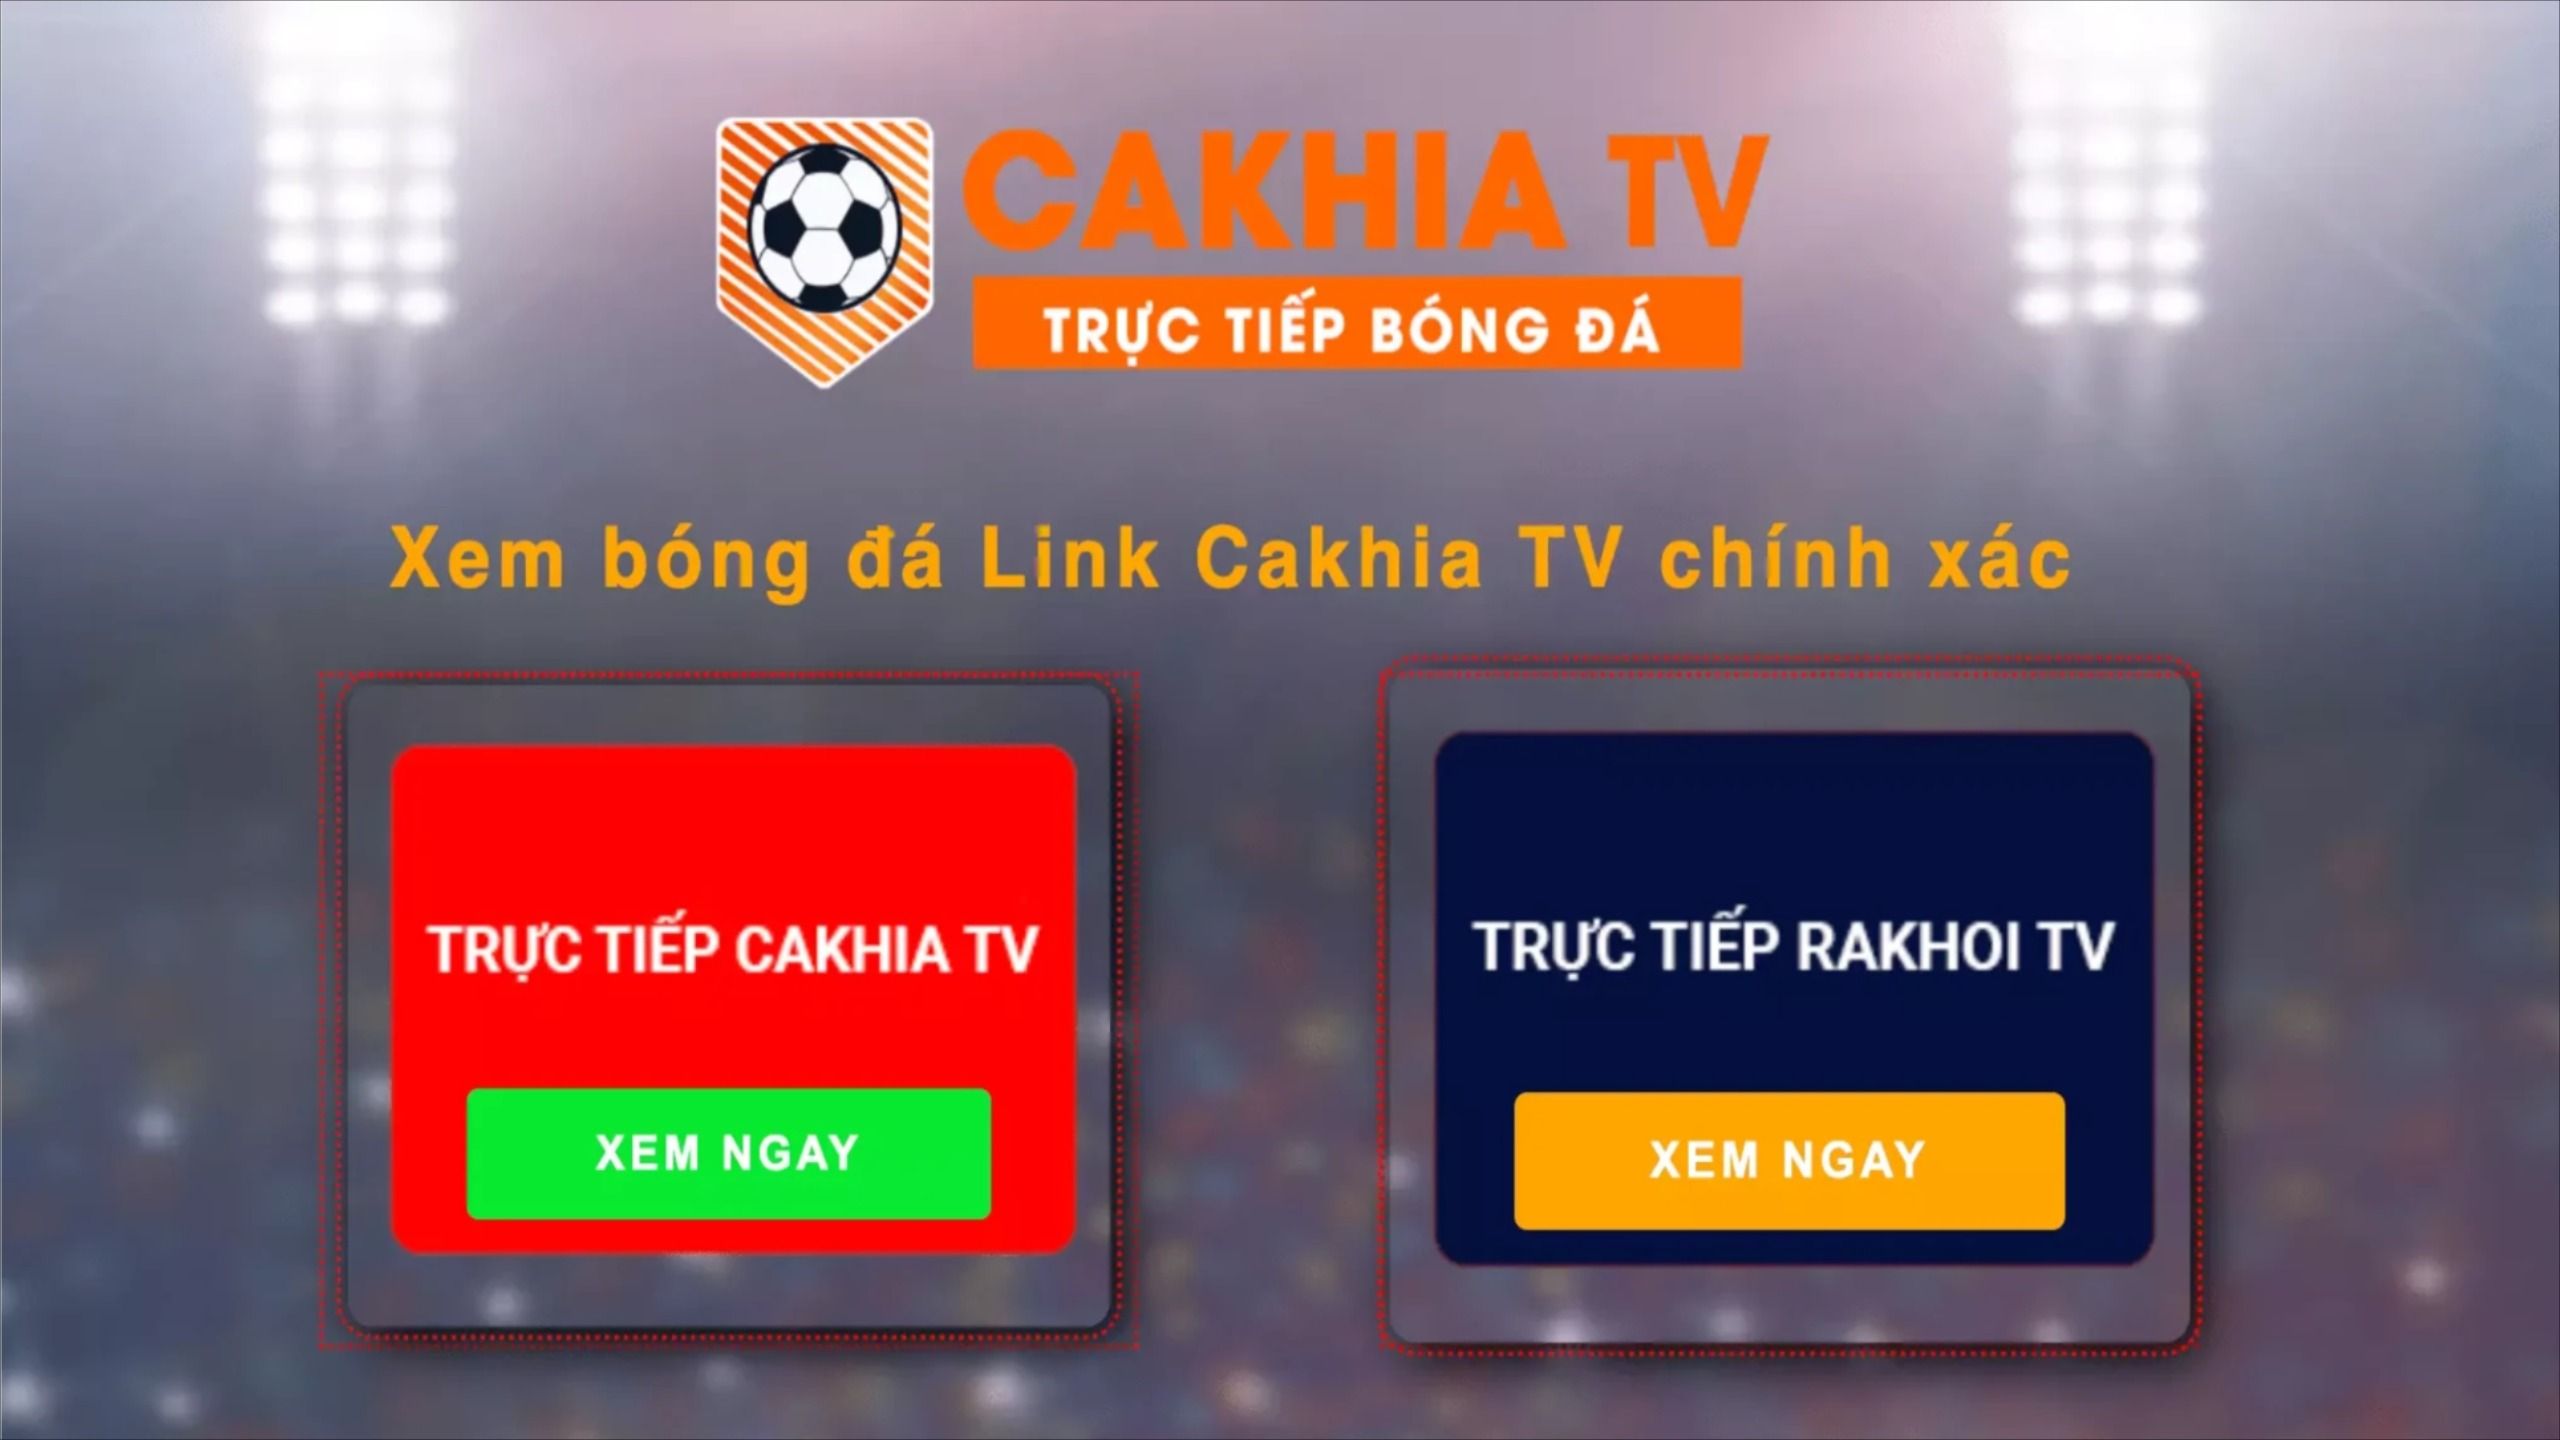 Cakhia tv cung cấp hình ảnh video chân thực sắc nét không giật lag 